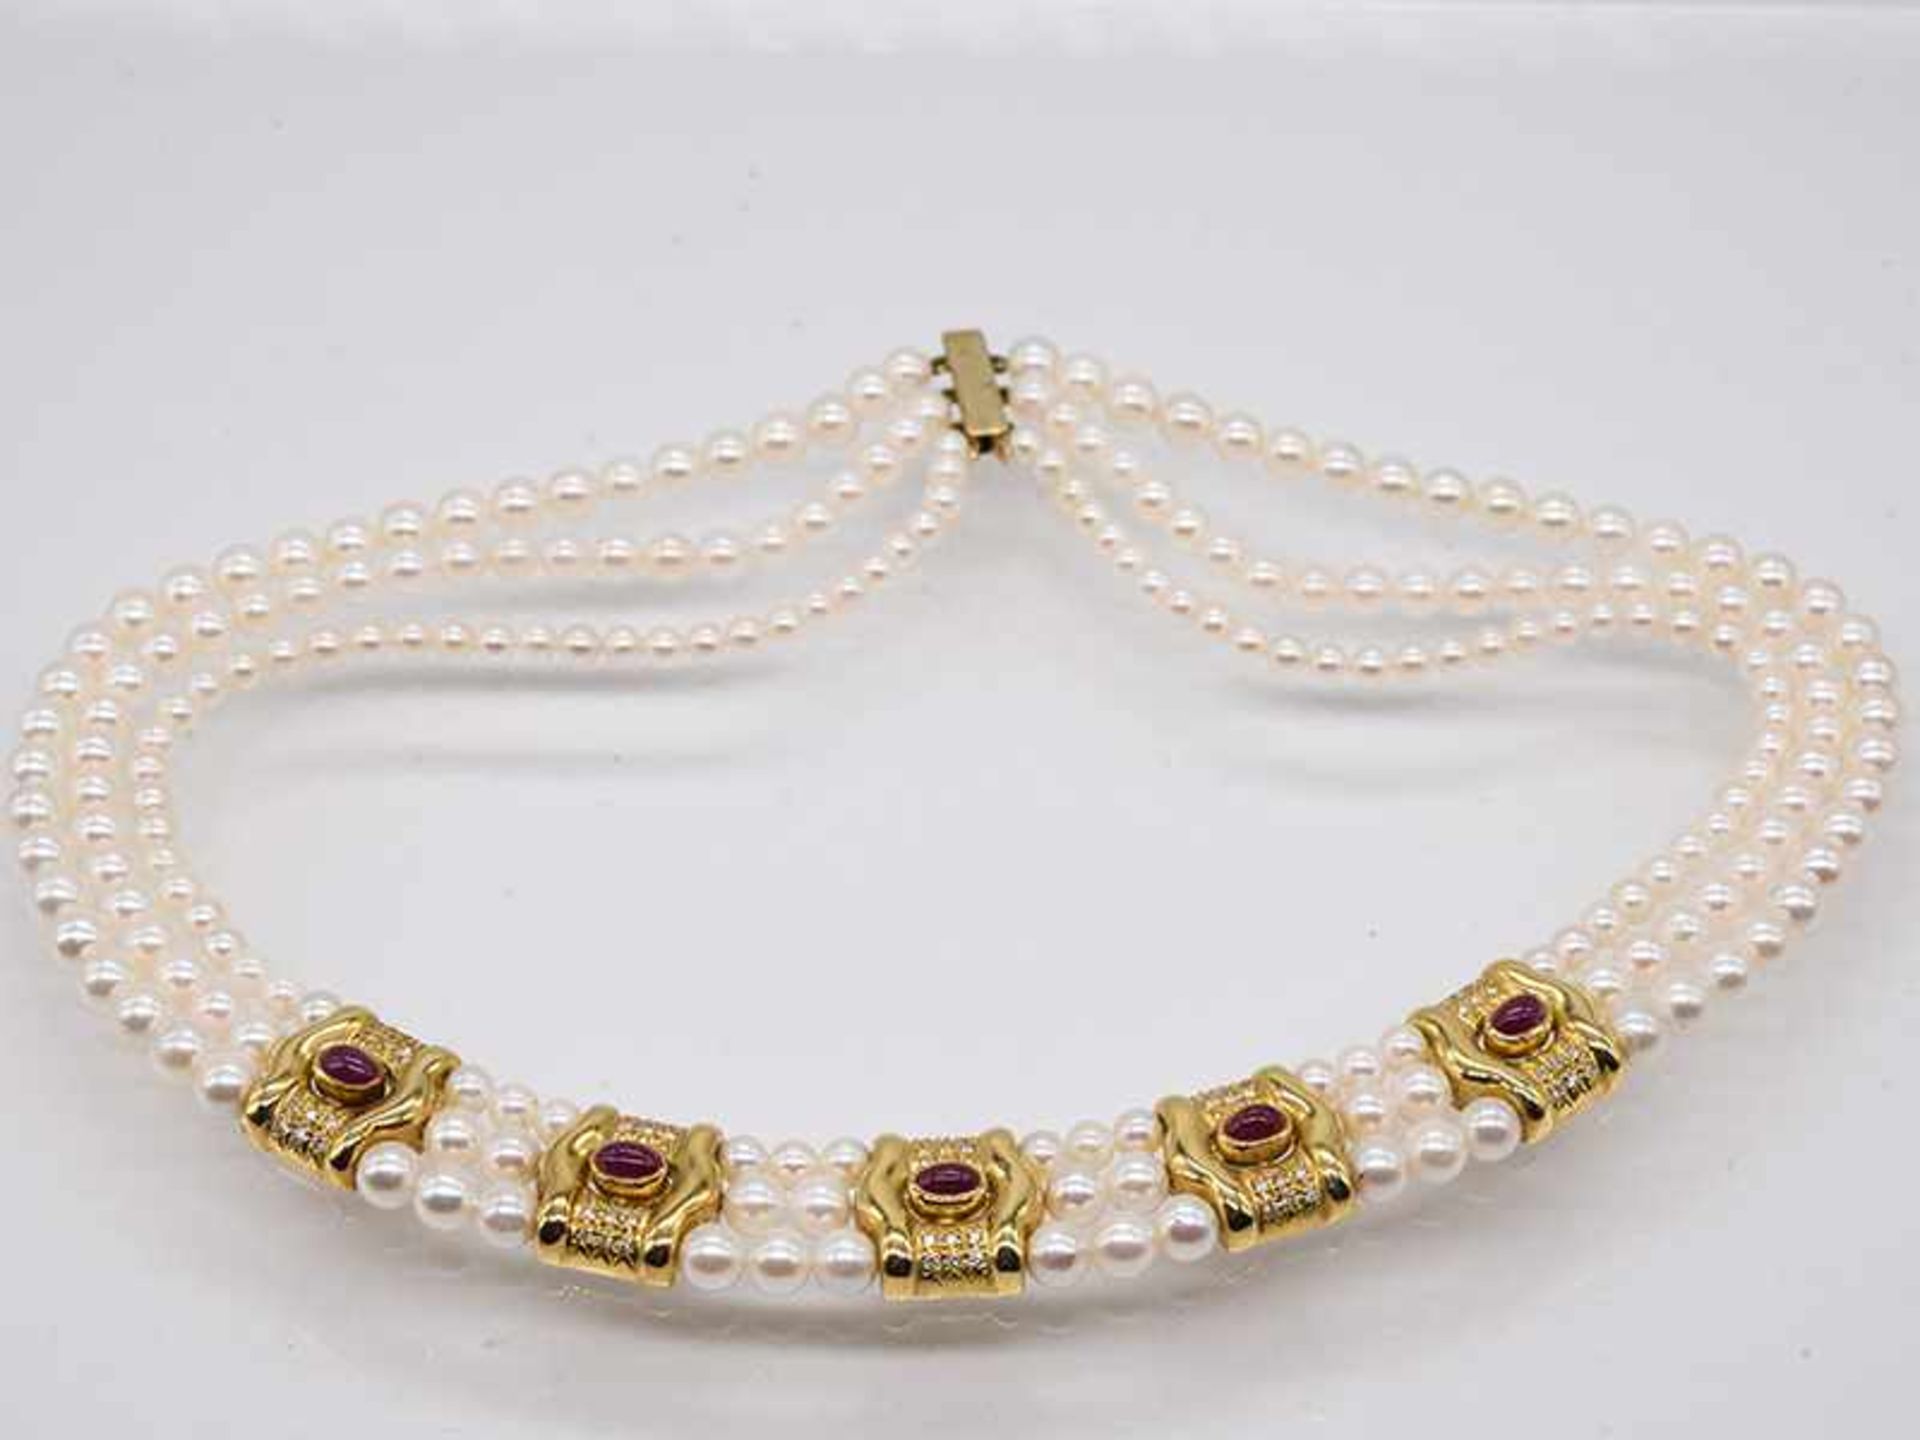 3 reihige Akoya-Perlenkette mit goldenen Zwischenelementen, Rubin-Cabochons, ca. 2,5 ct und 60